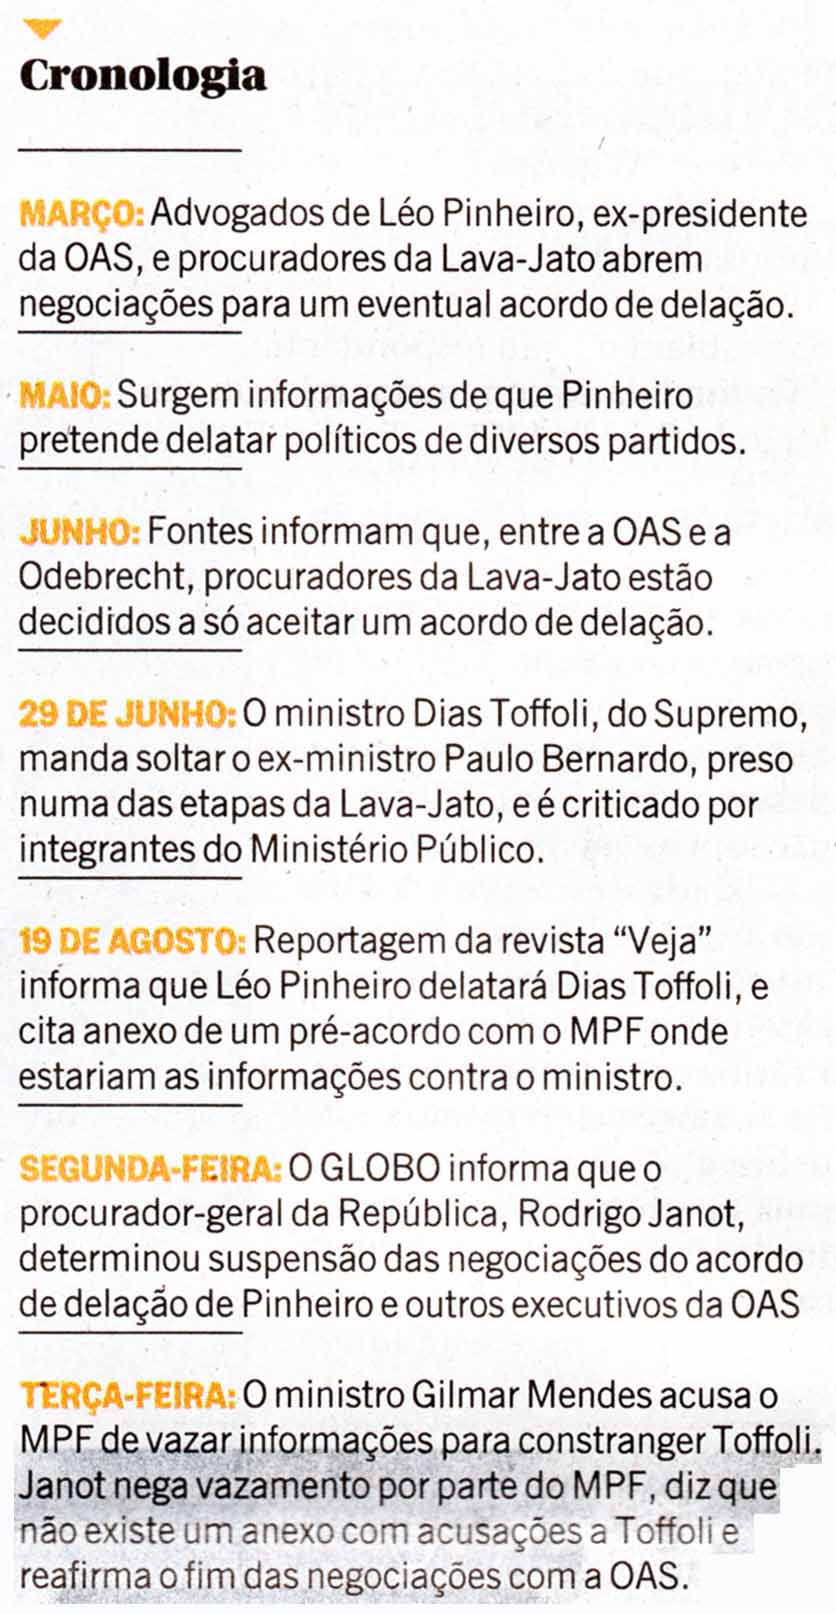 Cronologia do Estelionato denuncial - O Globo 24.08.2016